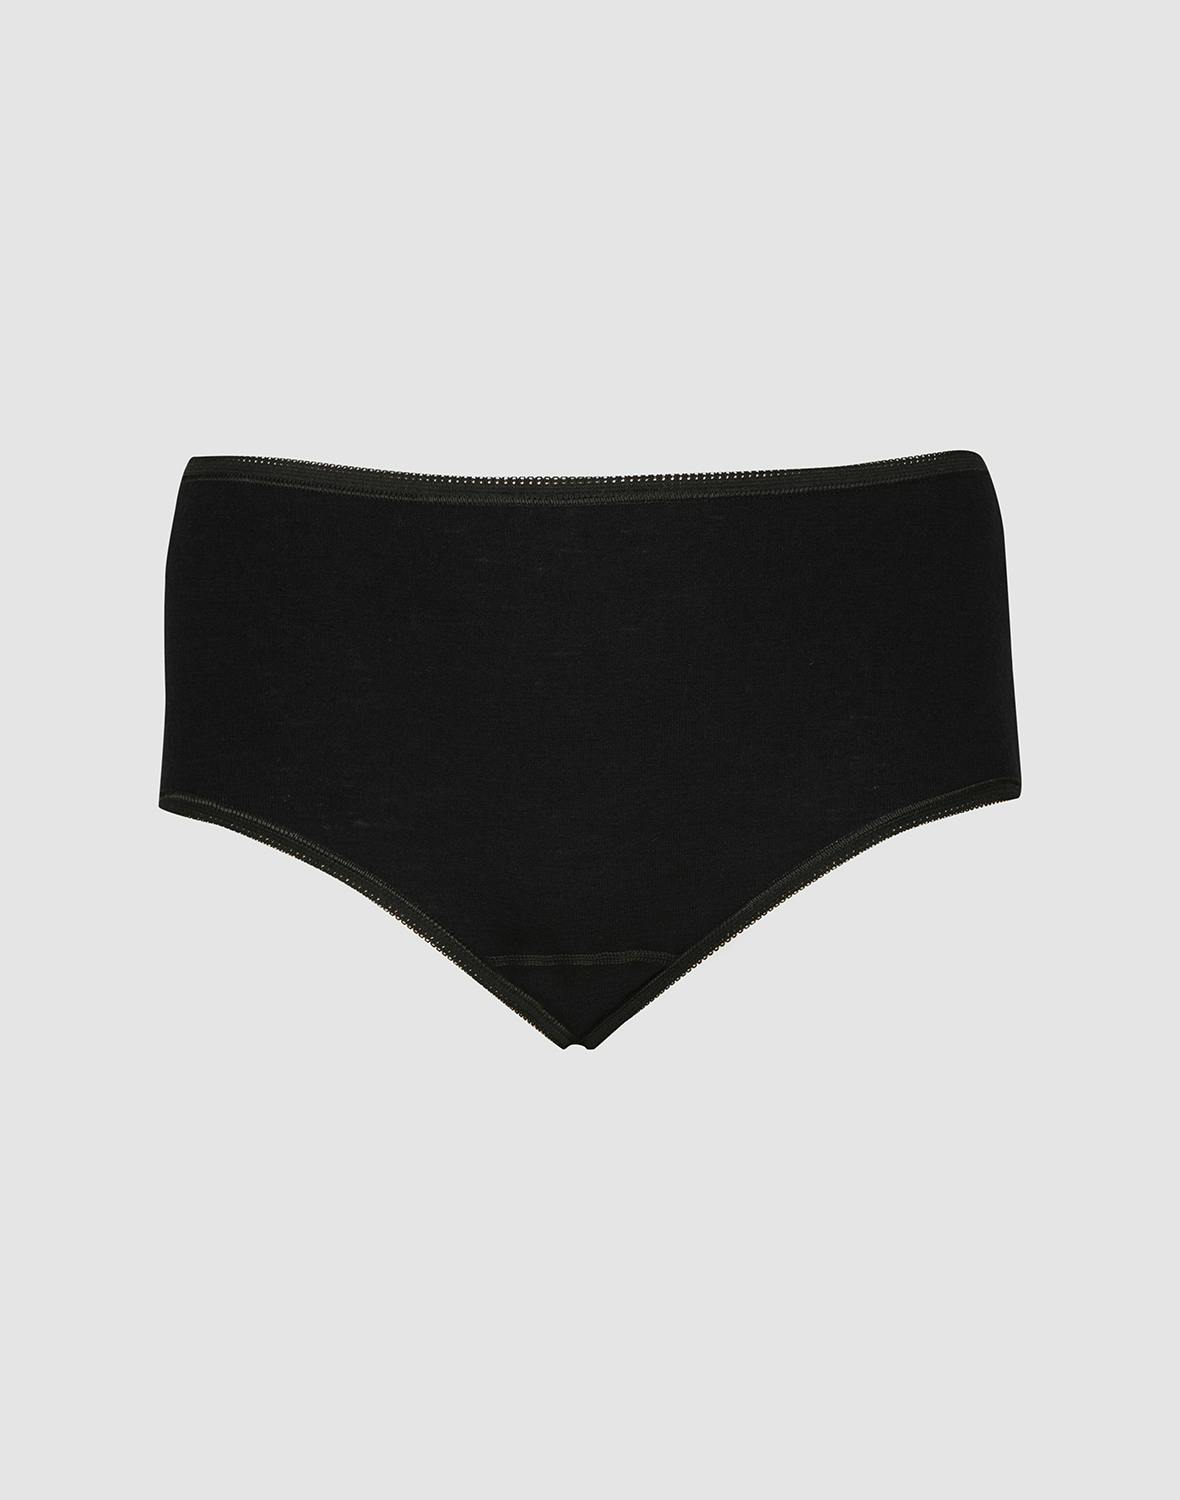 DILLING Women's Merino Briefs - Merino Wool Underwear for Ladies Black 8 :  : Fashion